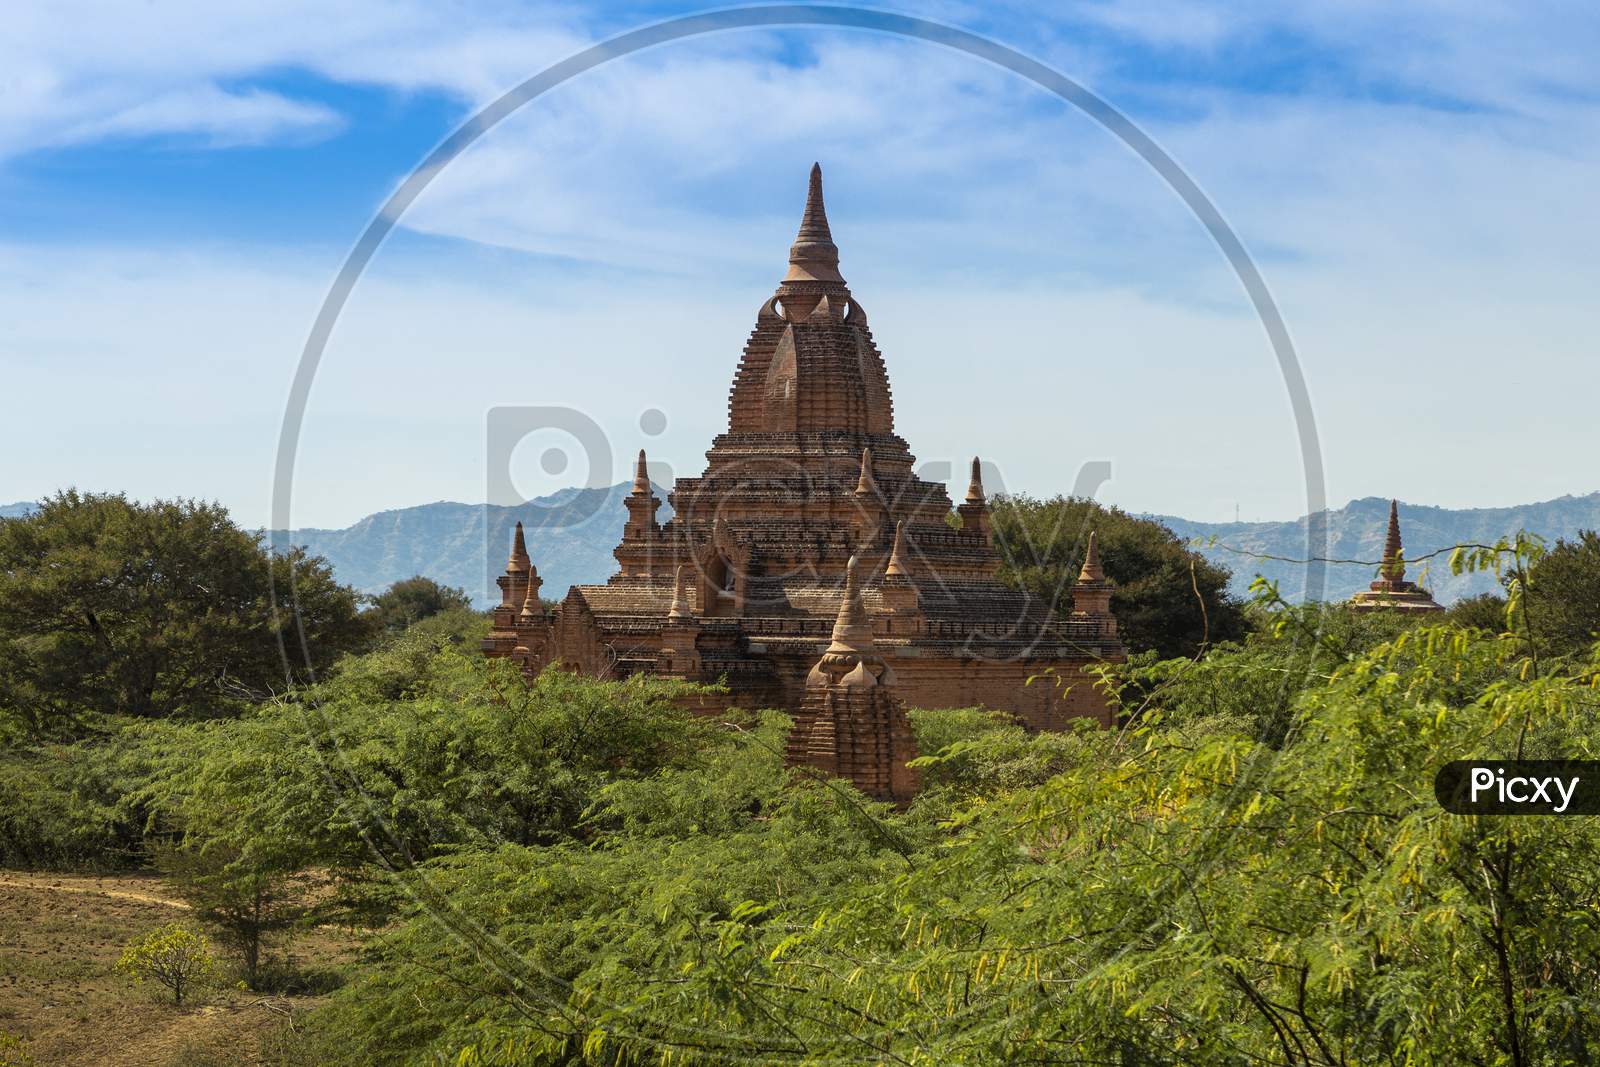 Bagan in Myanmar(Burma)